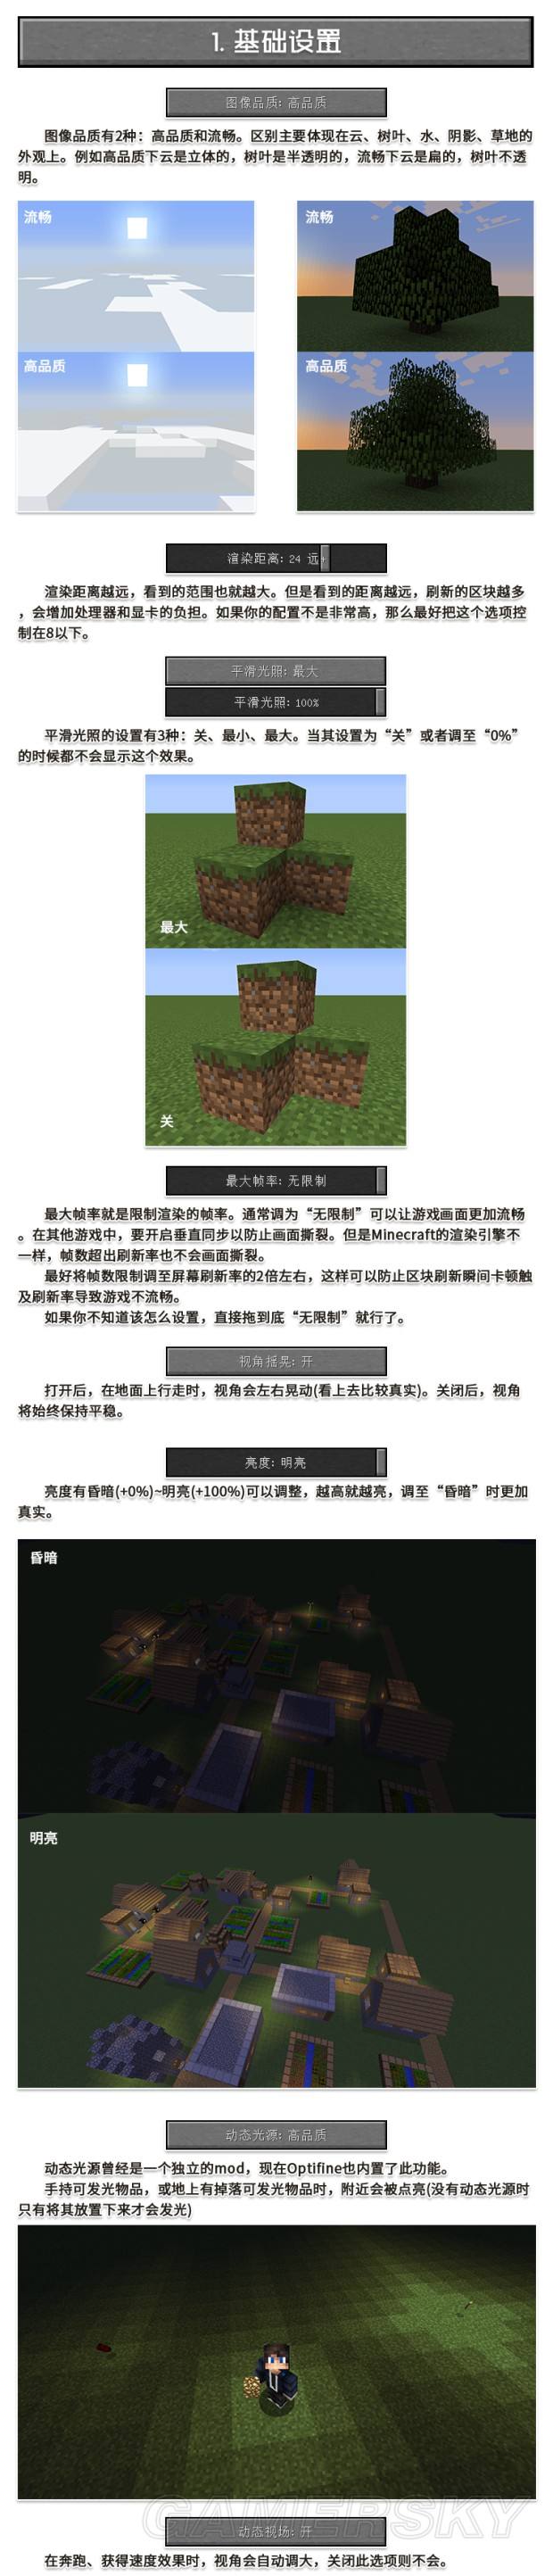 《我的世界》中国版服务器Optifine设置图文教程